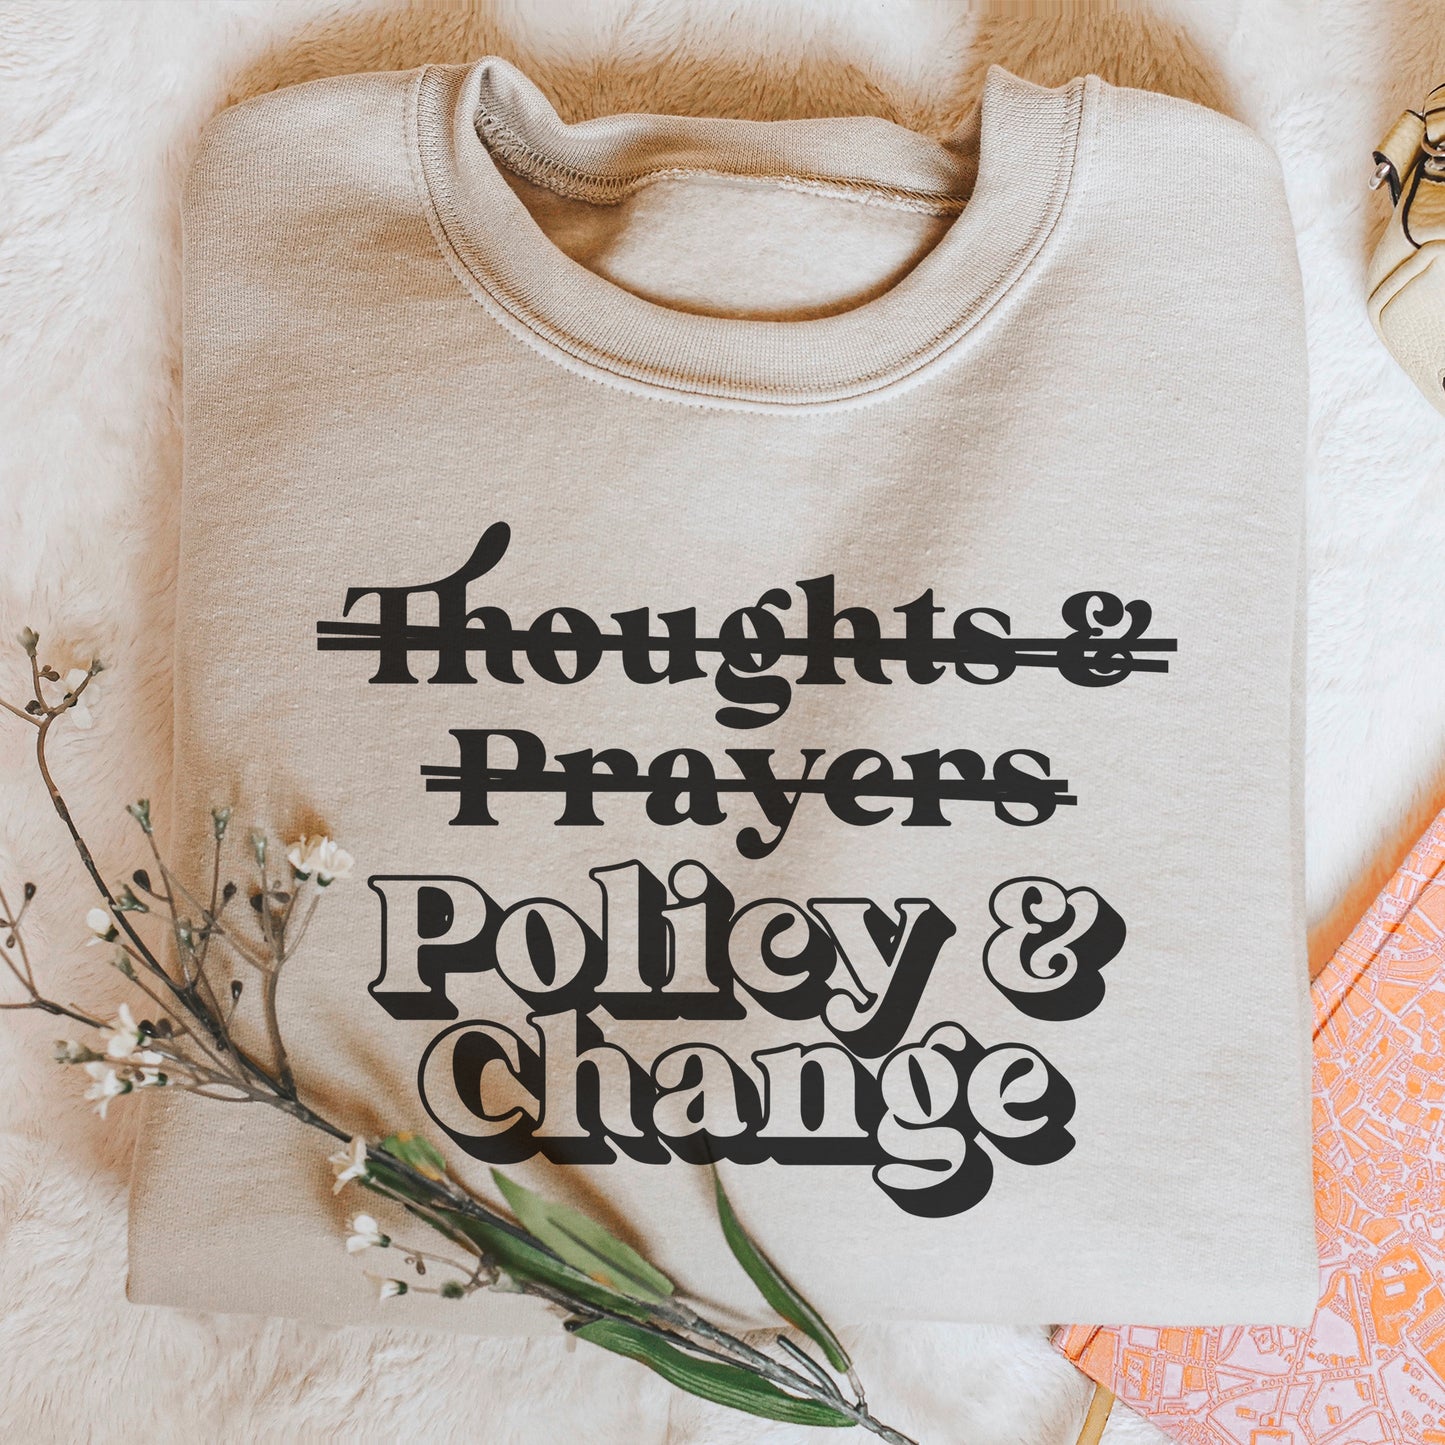 Policy and Change Sweatshirt